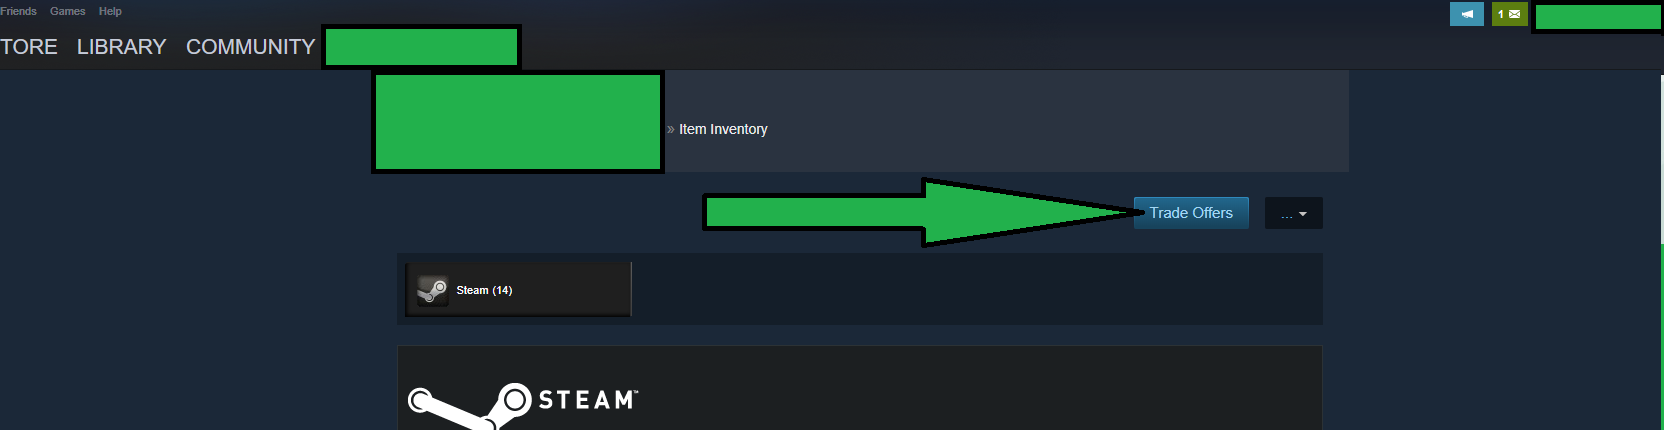 Steam Trade Offers screenshot